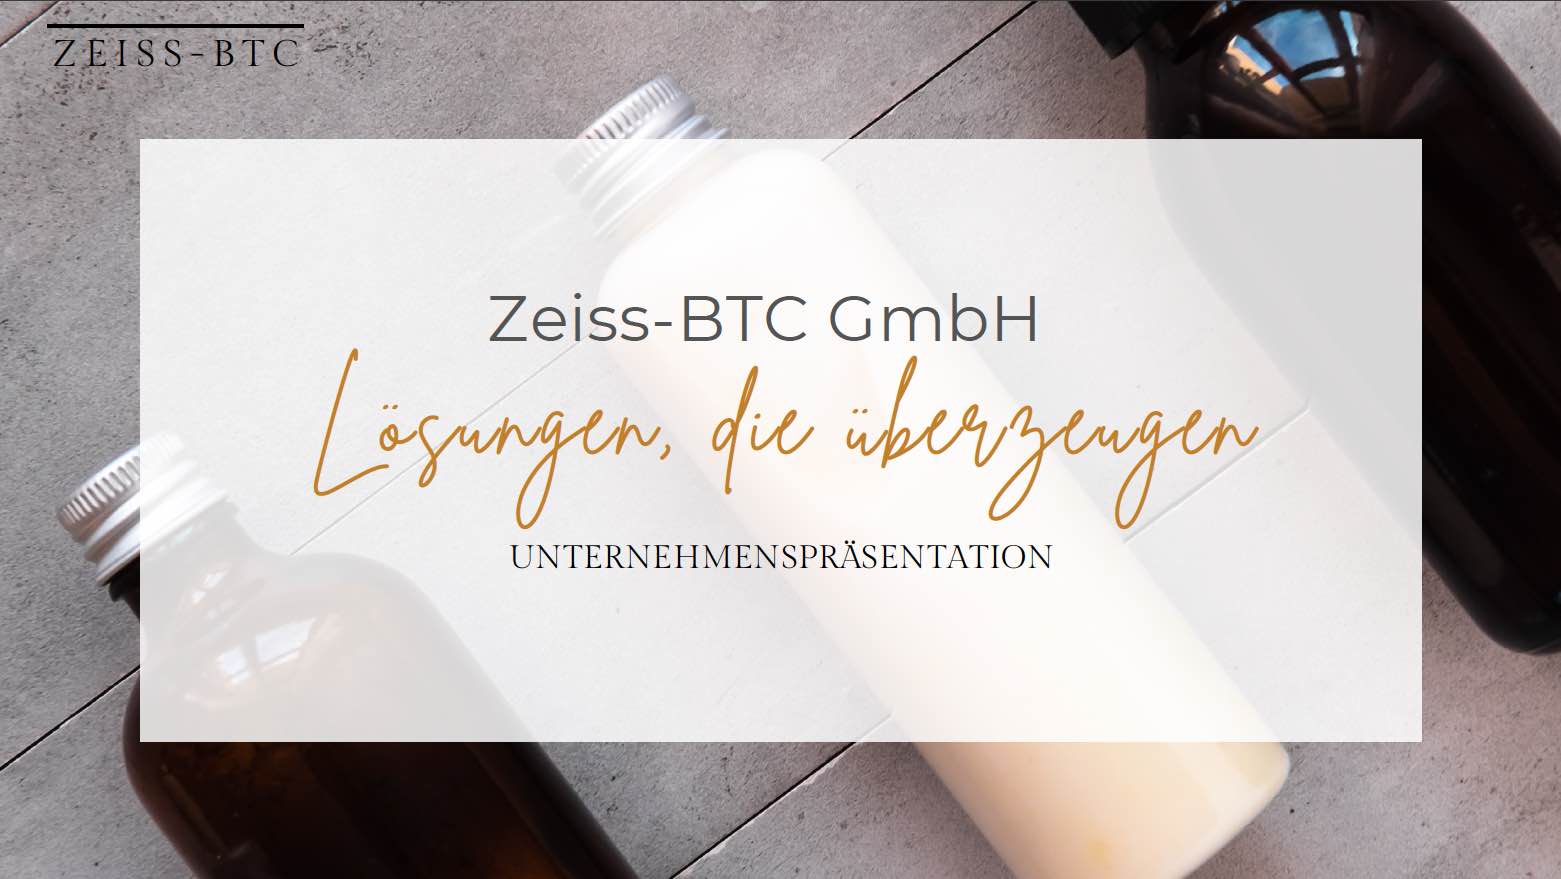 Zeiss-BTC GmbH – Weitere Informationen folgen